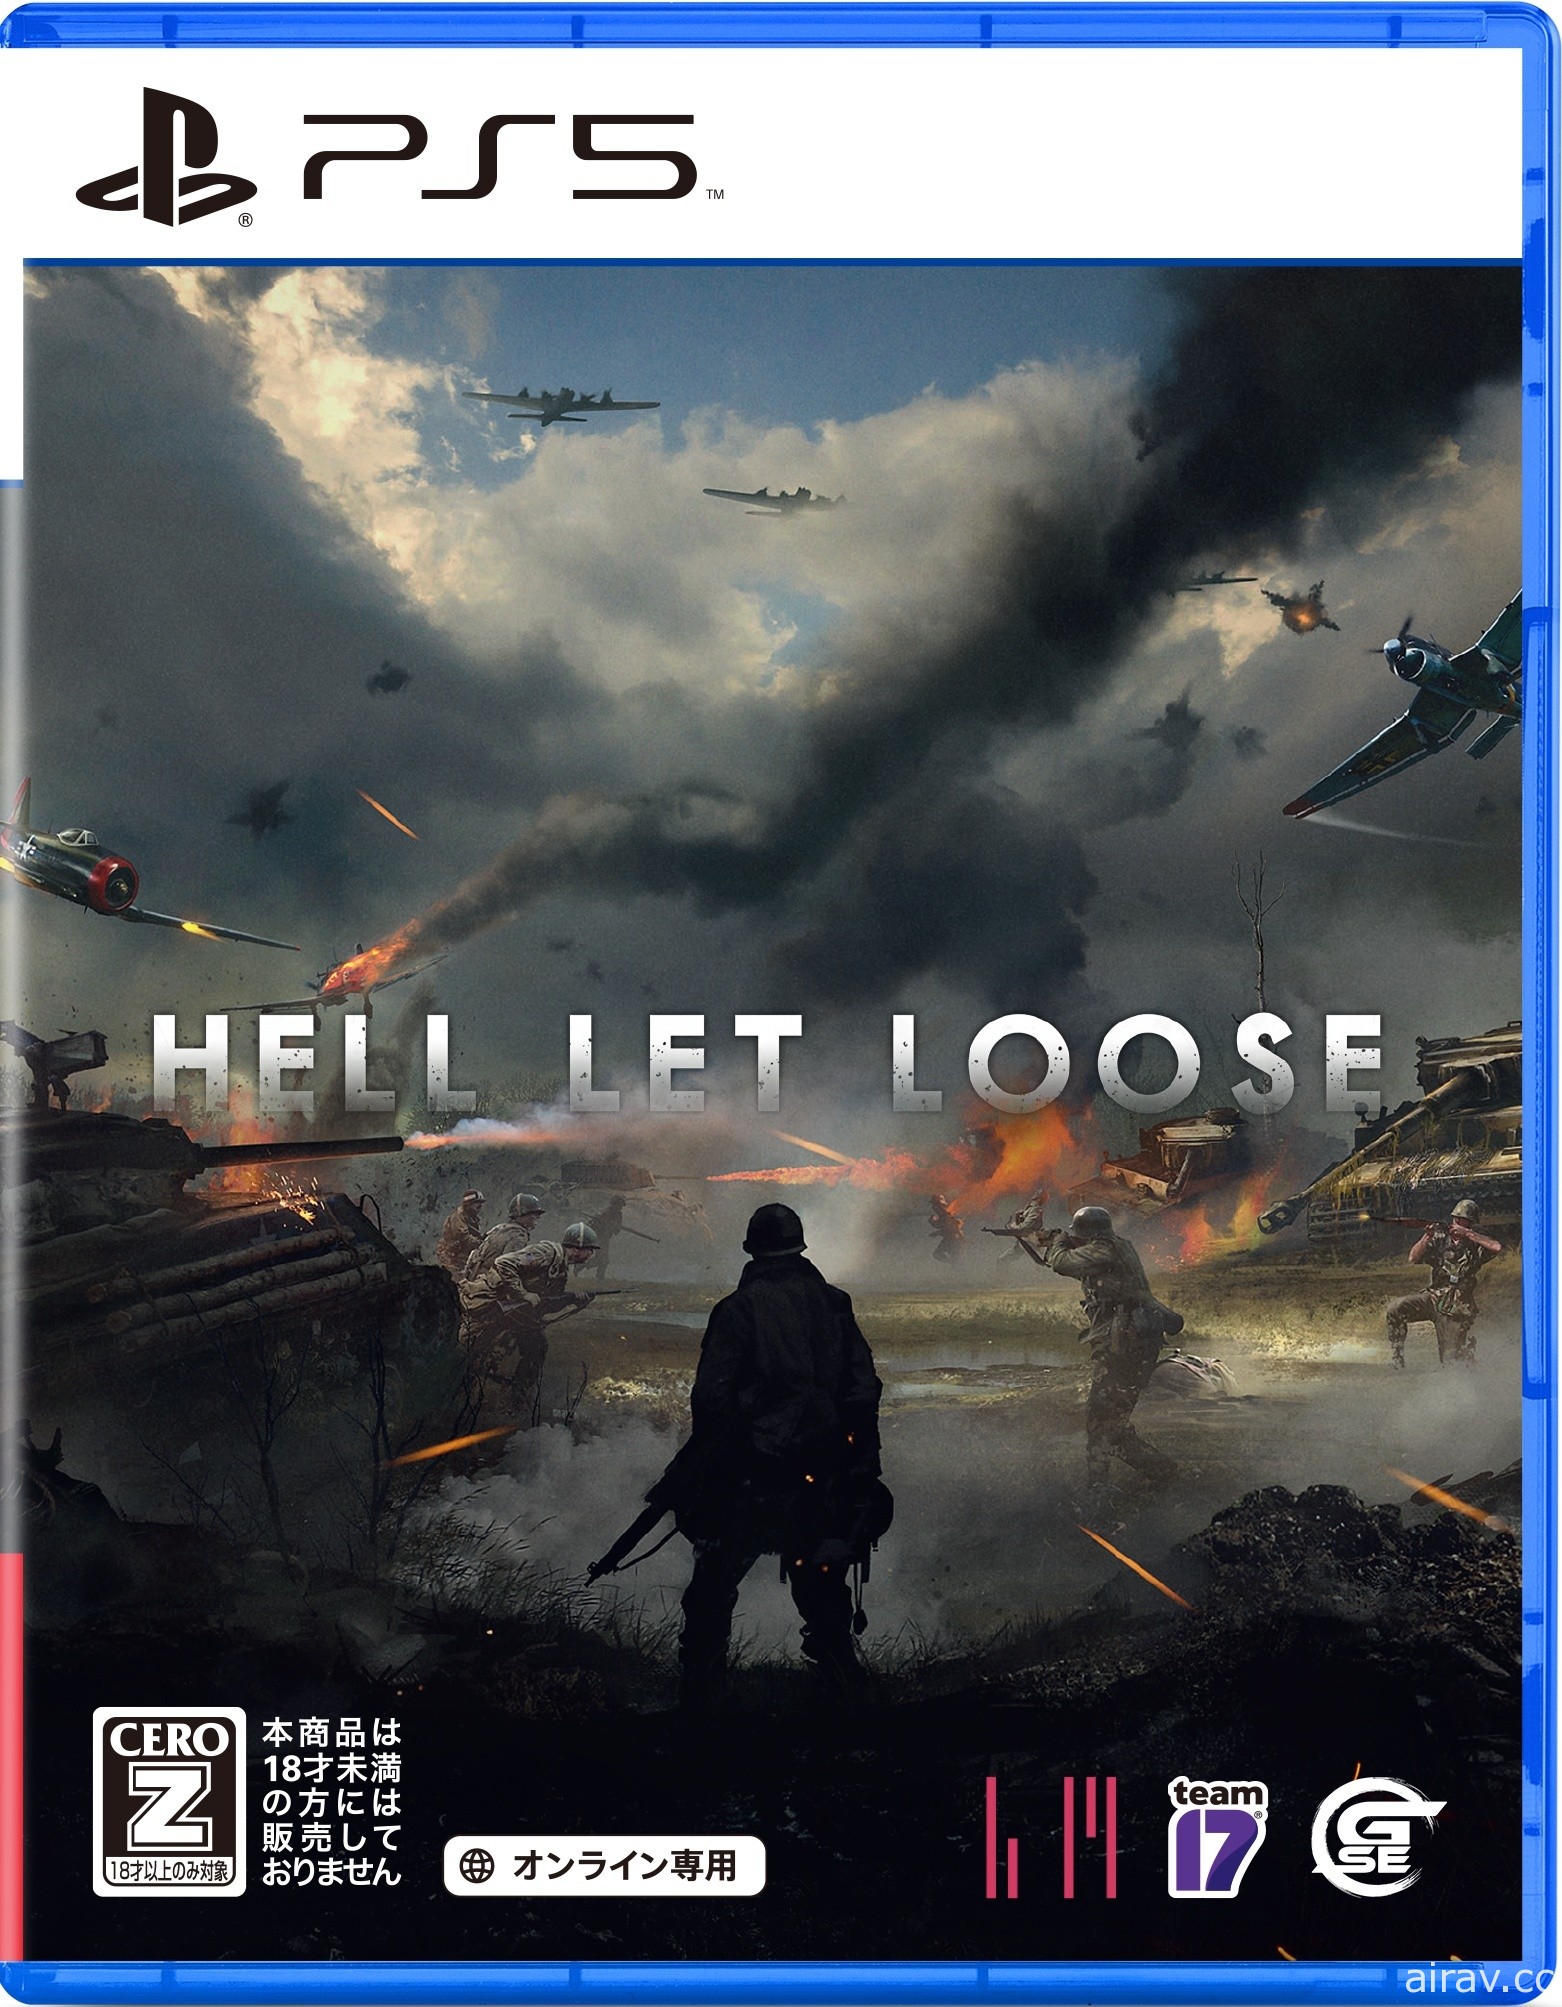 《集火地狱 Hell Let Loose》PS5 版发售日确定 介绍活用 DualSense 无线控制器的功能